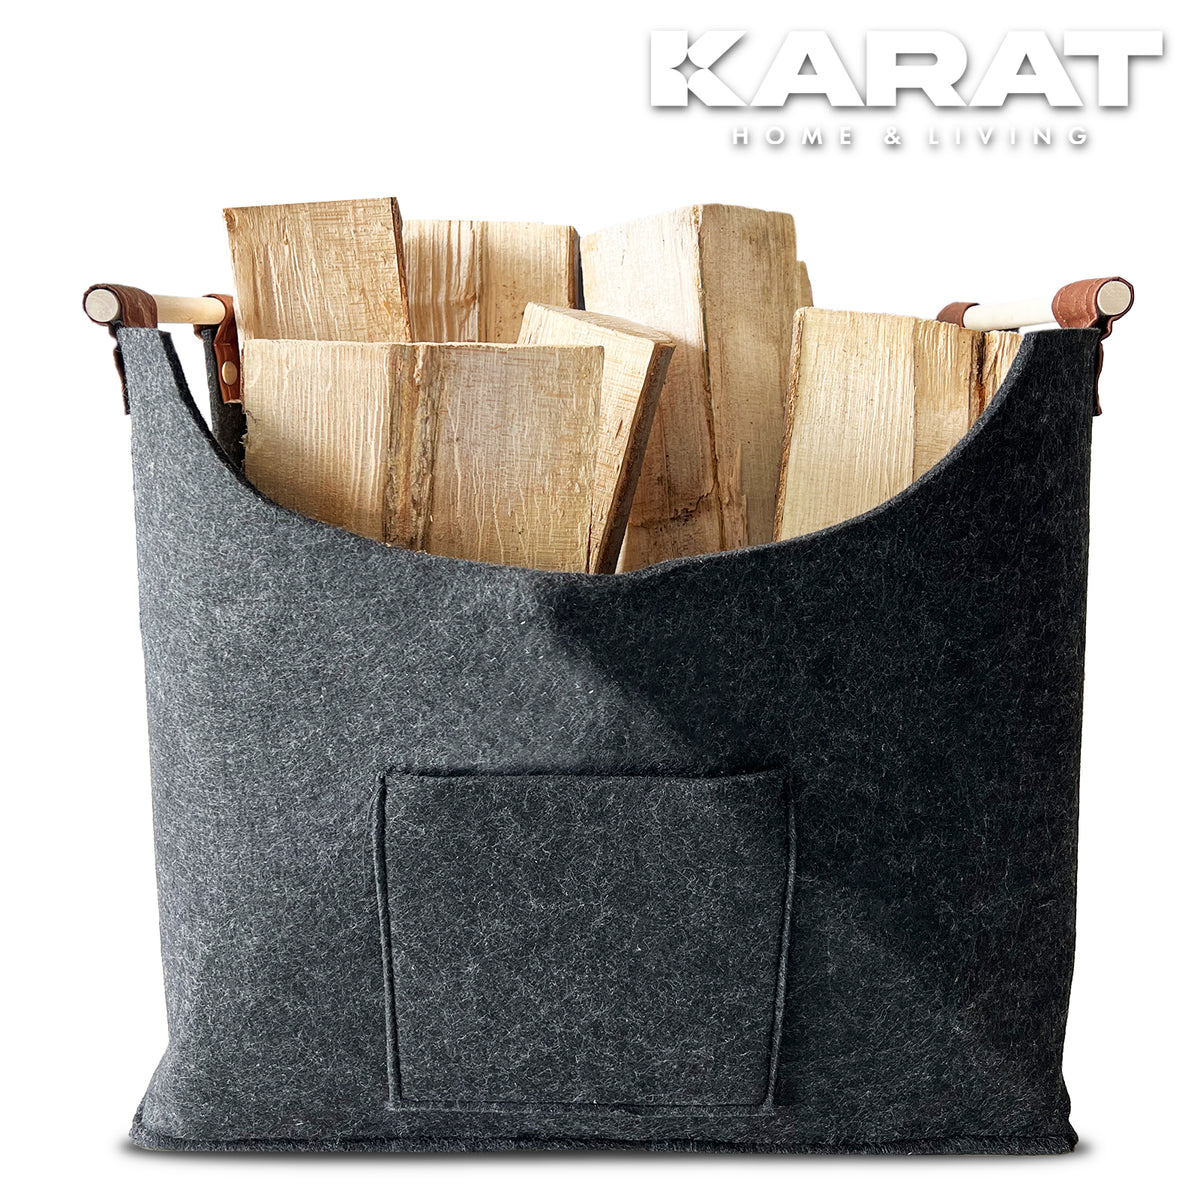 Felt bag Vesta | Firewood bag | Shopping bag | Foldable | Reinforced handle